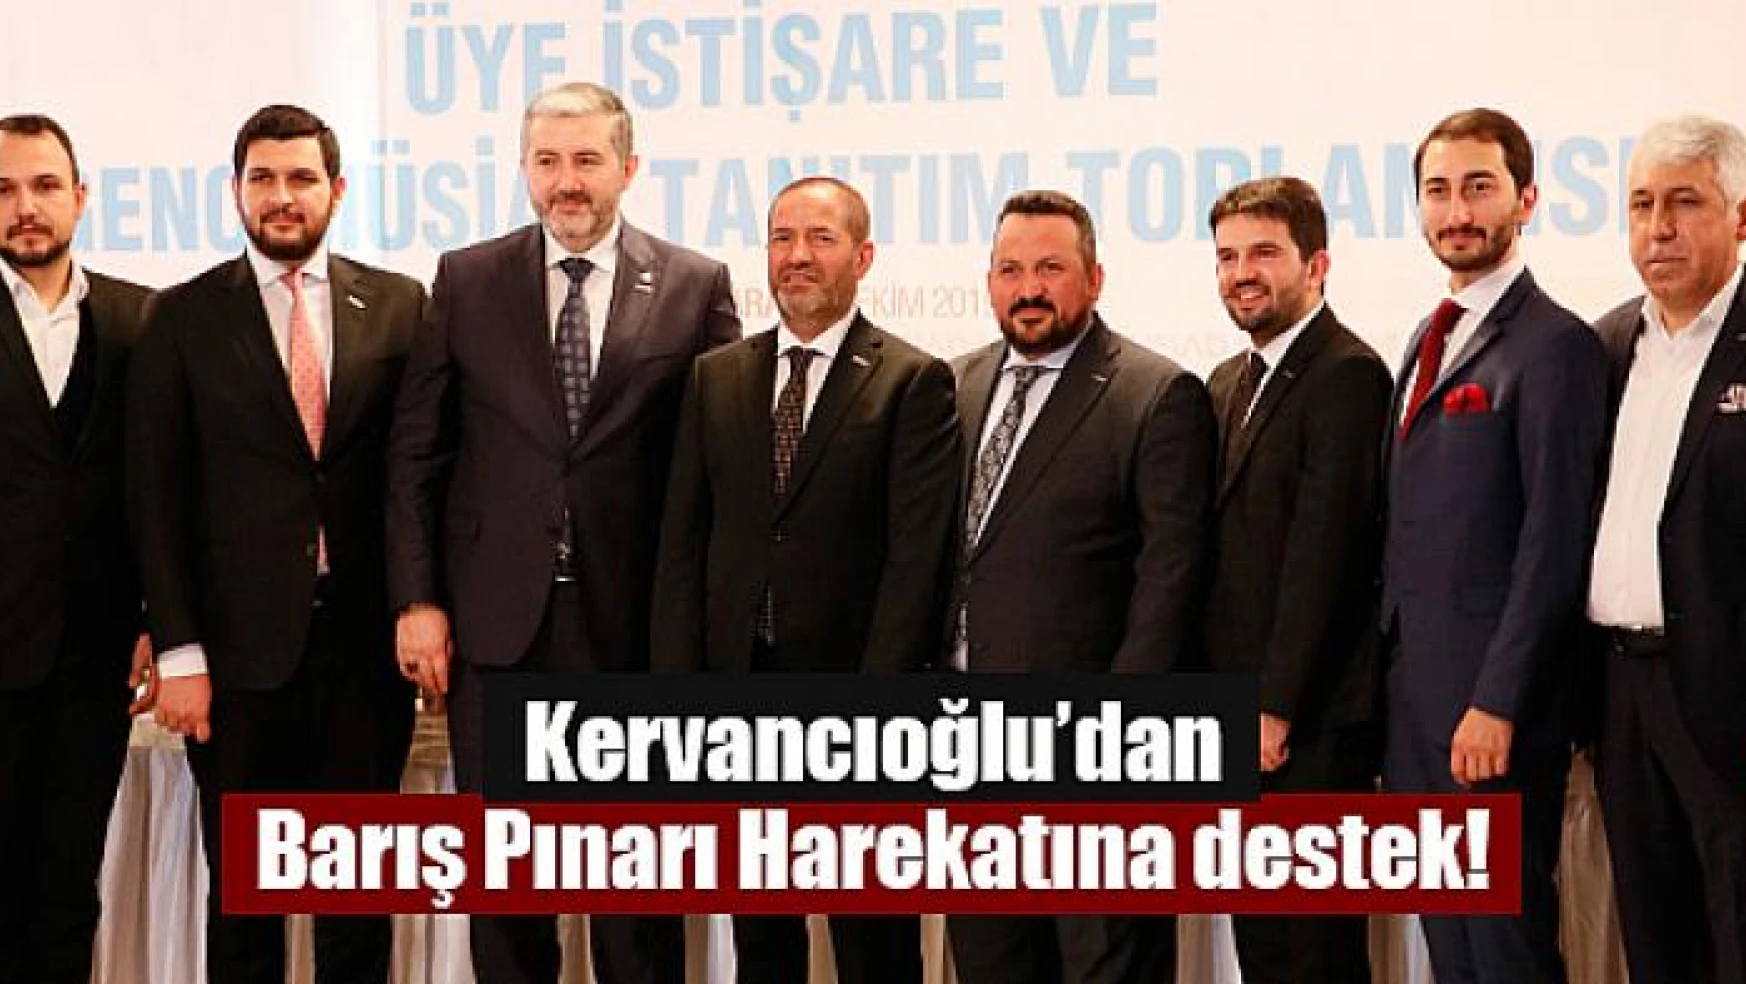 Kervancıoğlu'dan Barış Pınarı Harekatına destek!